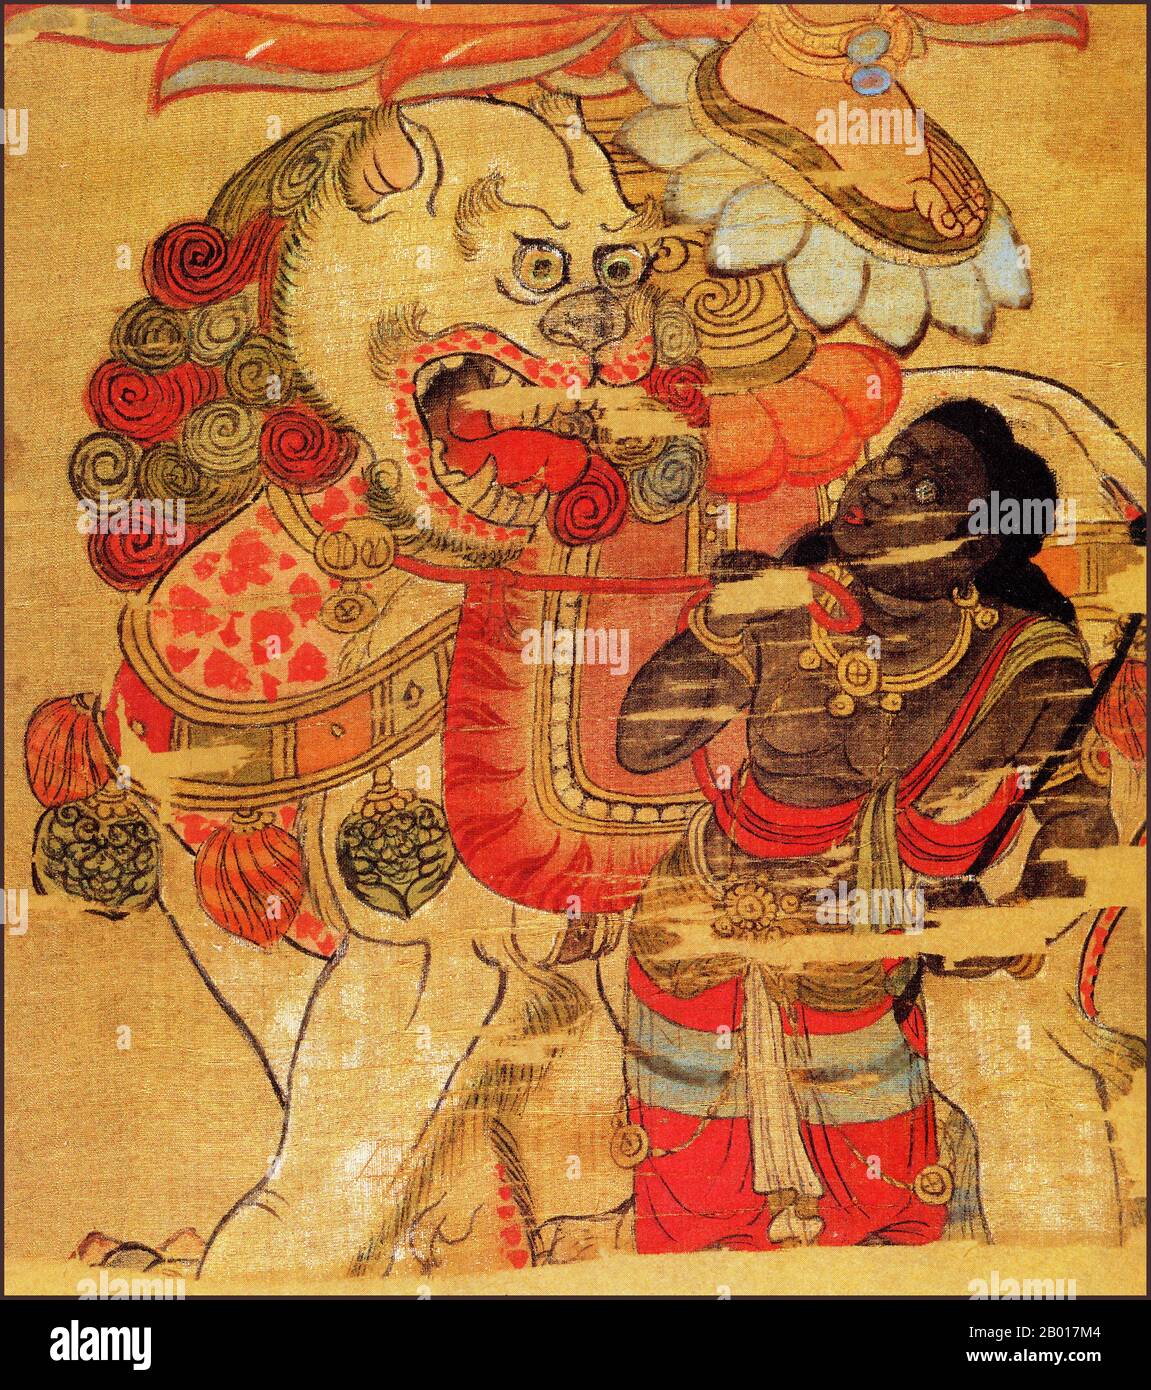 Cina: Dettaglio di un dipinto a spirale sospeso della Bodhisattva Manjusri dalle grotte di Mogao, Dunhuang, 9th secolo CE. Mañjuśrī è raffigurato come un maschio bodhisattva che impugna una spada fiammeggiante nella sua mano destra, che rappresenta la realizzazione della saggezza trascendente che riduce l'ignoranza e la dualità. La Scrittura sostenuta dal loto tenuto nella sua mano sinistra è un Prajñāpāramitā sūtra, che rappresenta il suo raggiungimento di realizzazione ultima dal fiorire della saggezza. Mañjuśrī è spesso raffigurato come un cavallo su un leone blu, o seduto sulla pelle di un leone. Foto Stock